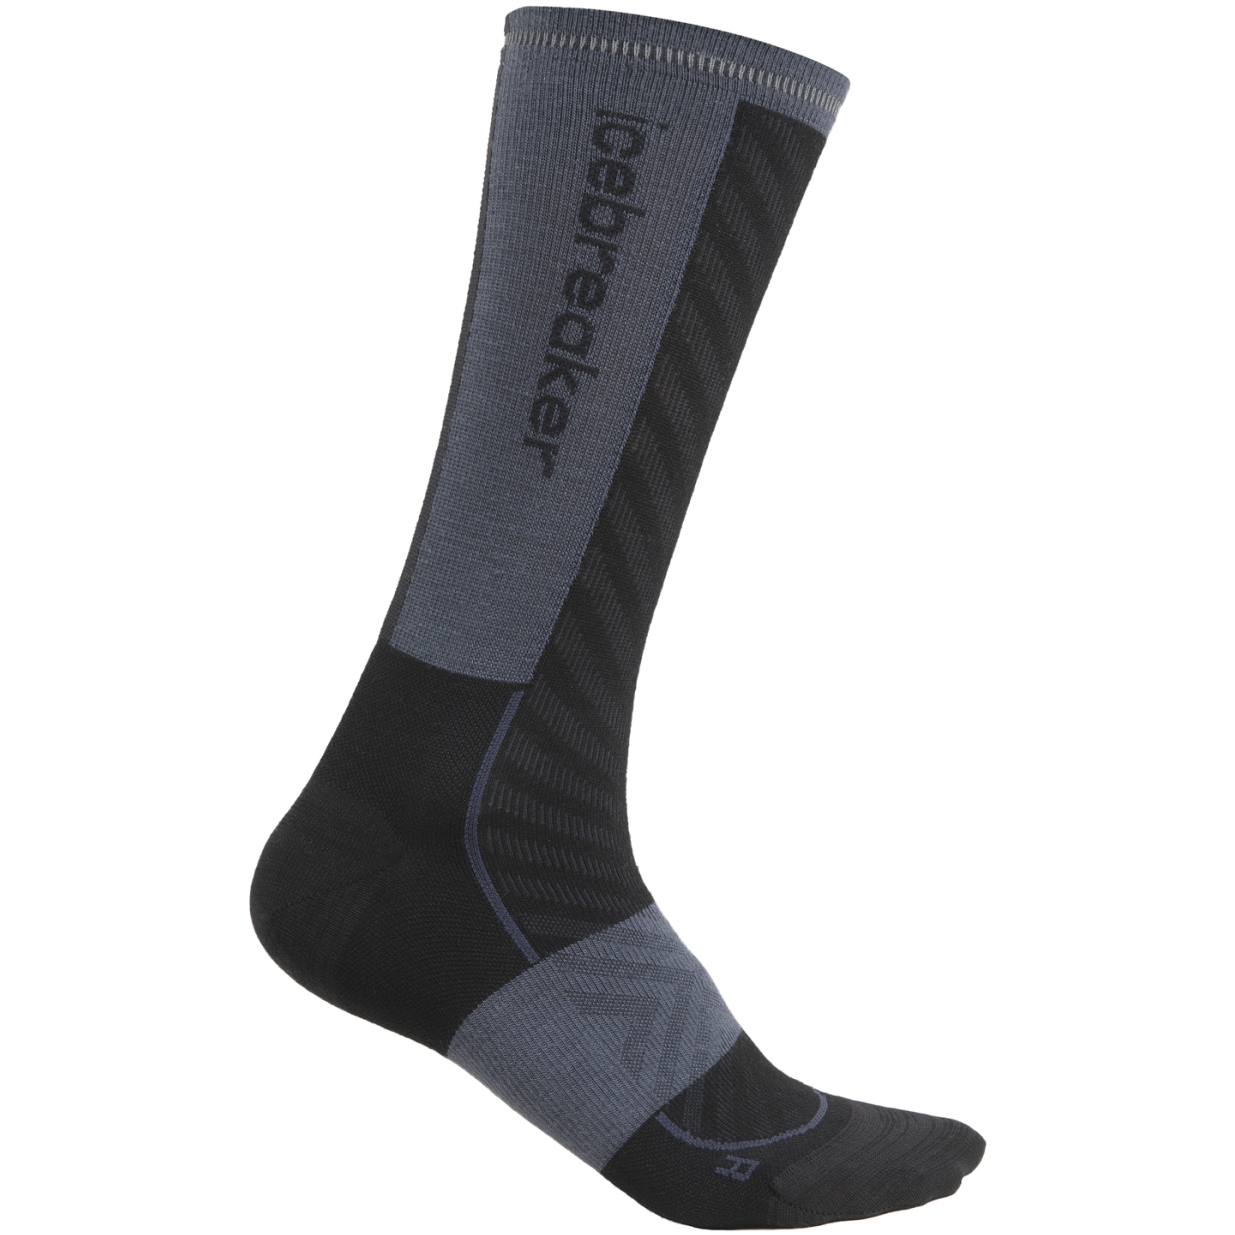 Produktbild von Icebreaker Merino Run+ Ultralight Socken Crew Damen - Schwarz/Graphite